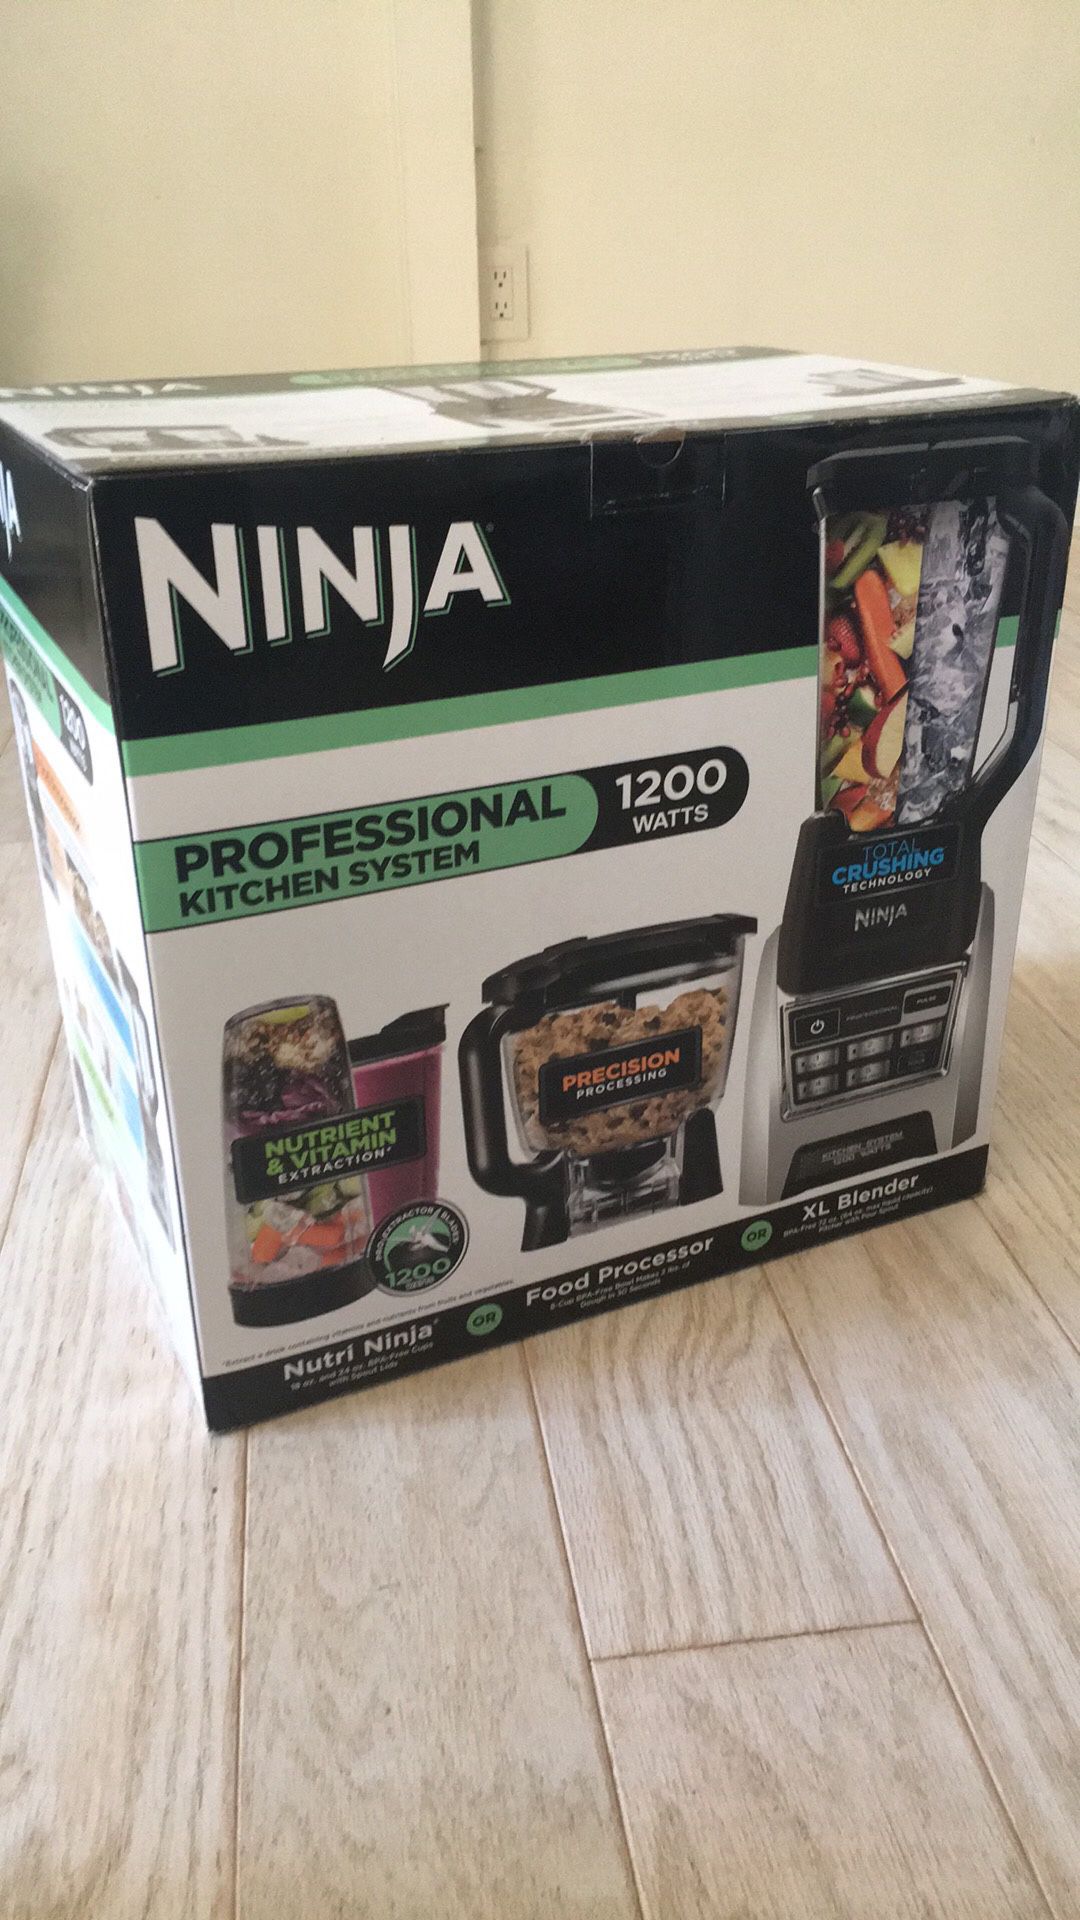 Ninja 1200 watt Professional Kitchen System